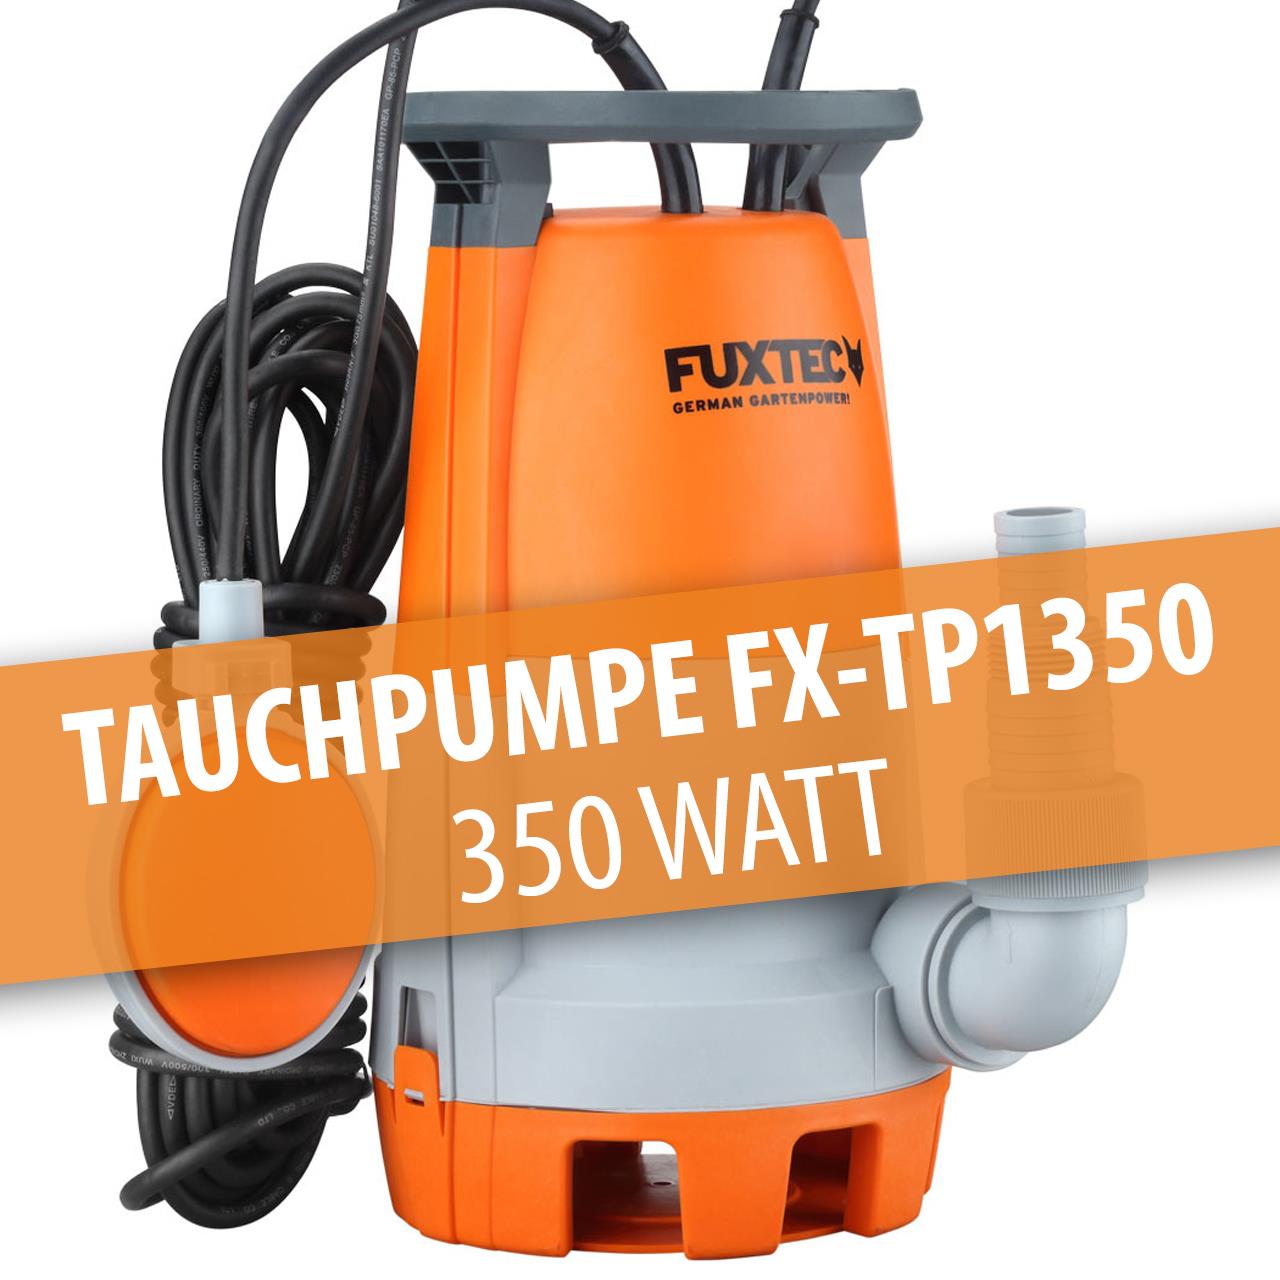 B-Ware FUXTEC Tauchpumpe FX-TP1350 - 350 Watt